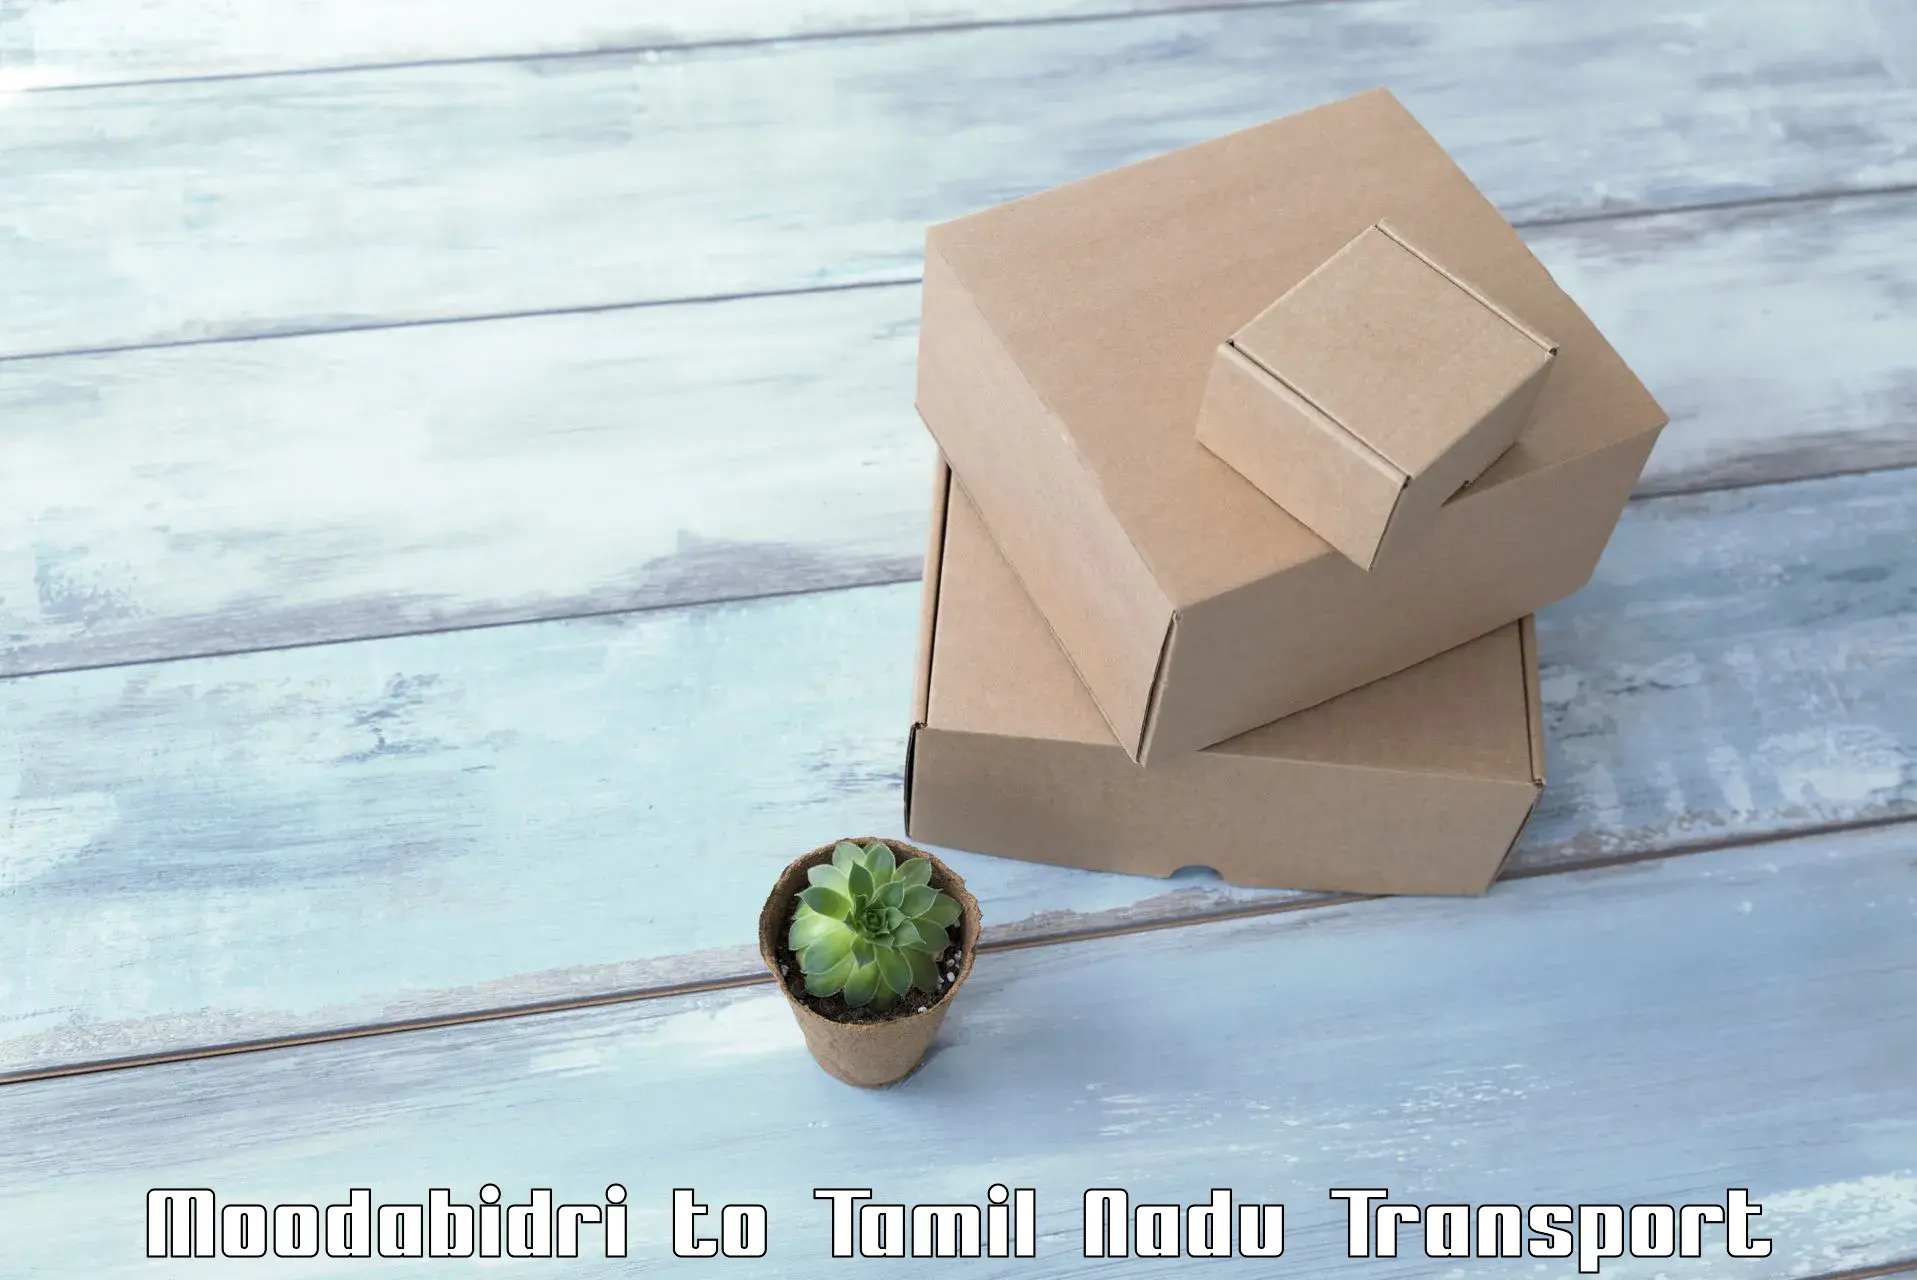 Container transport service Moodabidri to Avadi